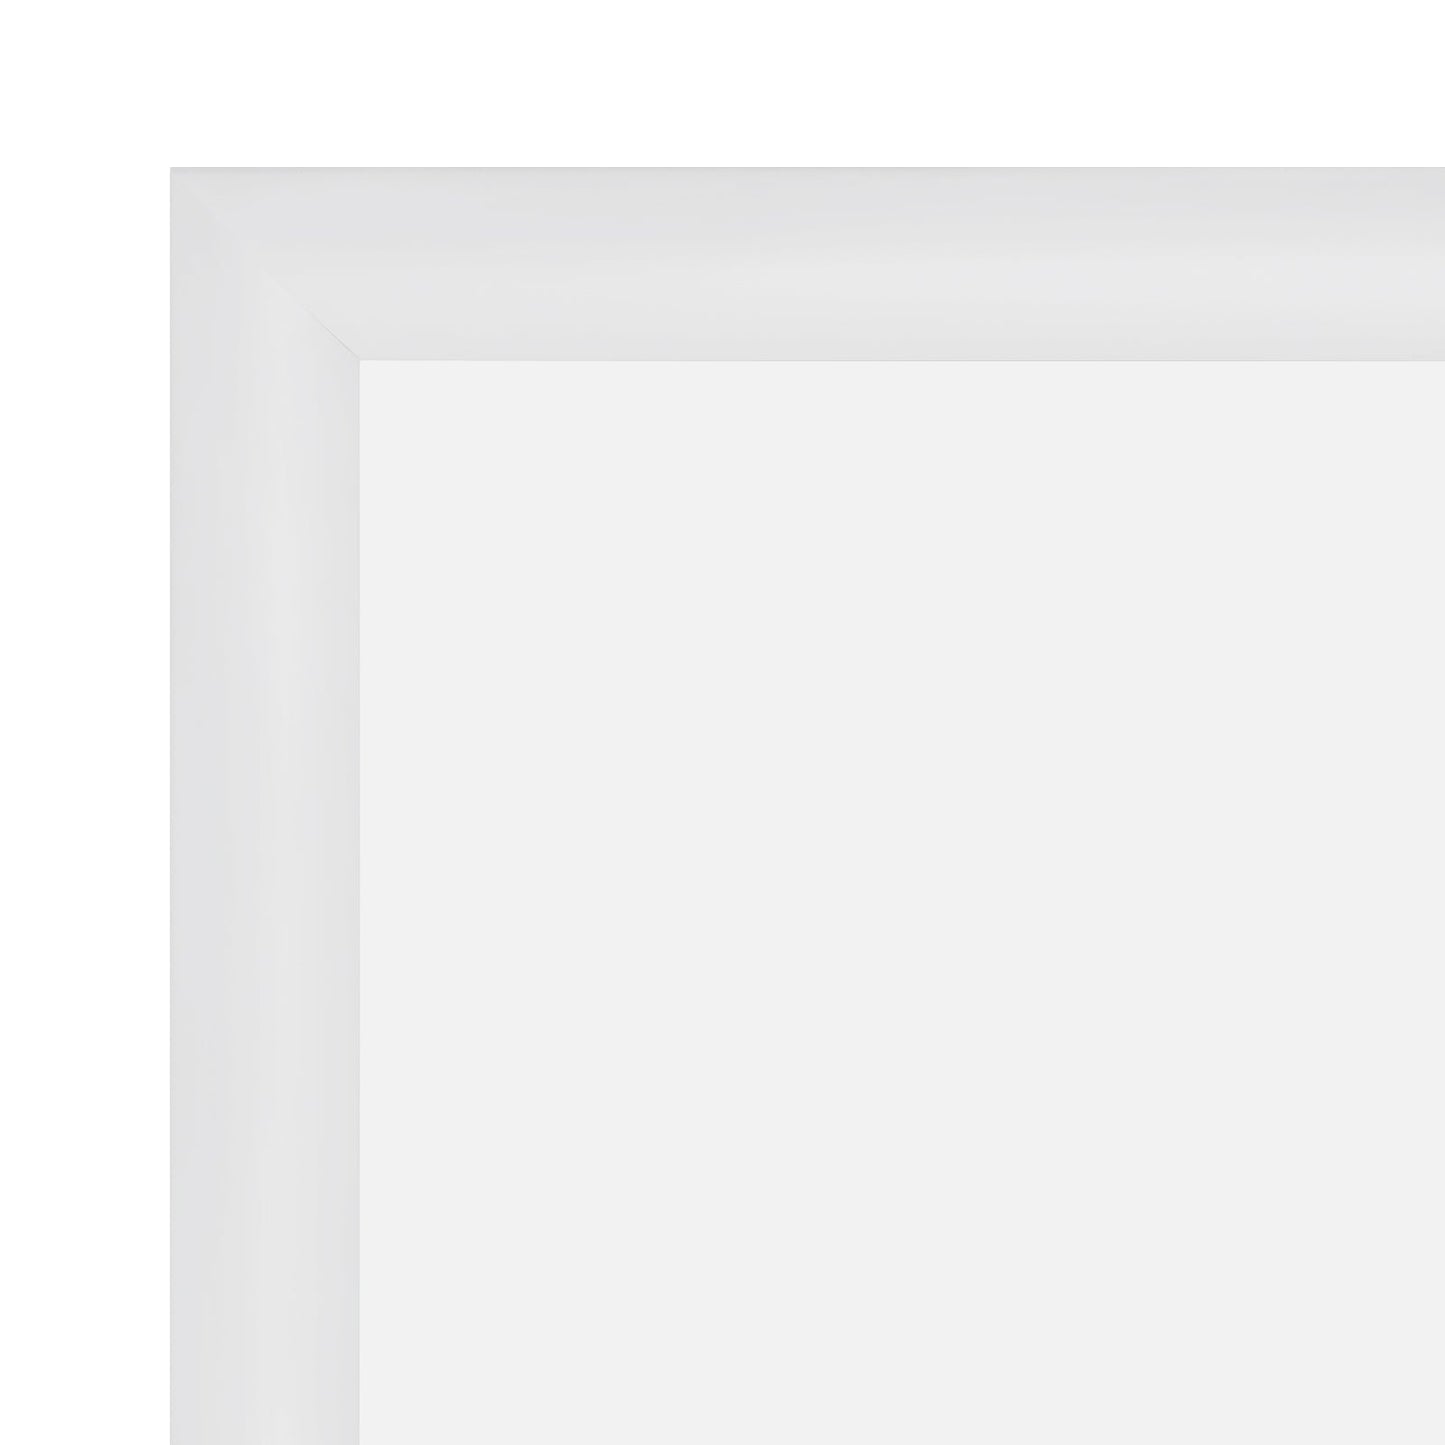 11x16 White SnapeZo® Snap Frame - 1.2" Profile